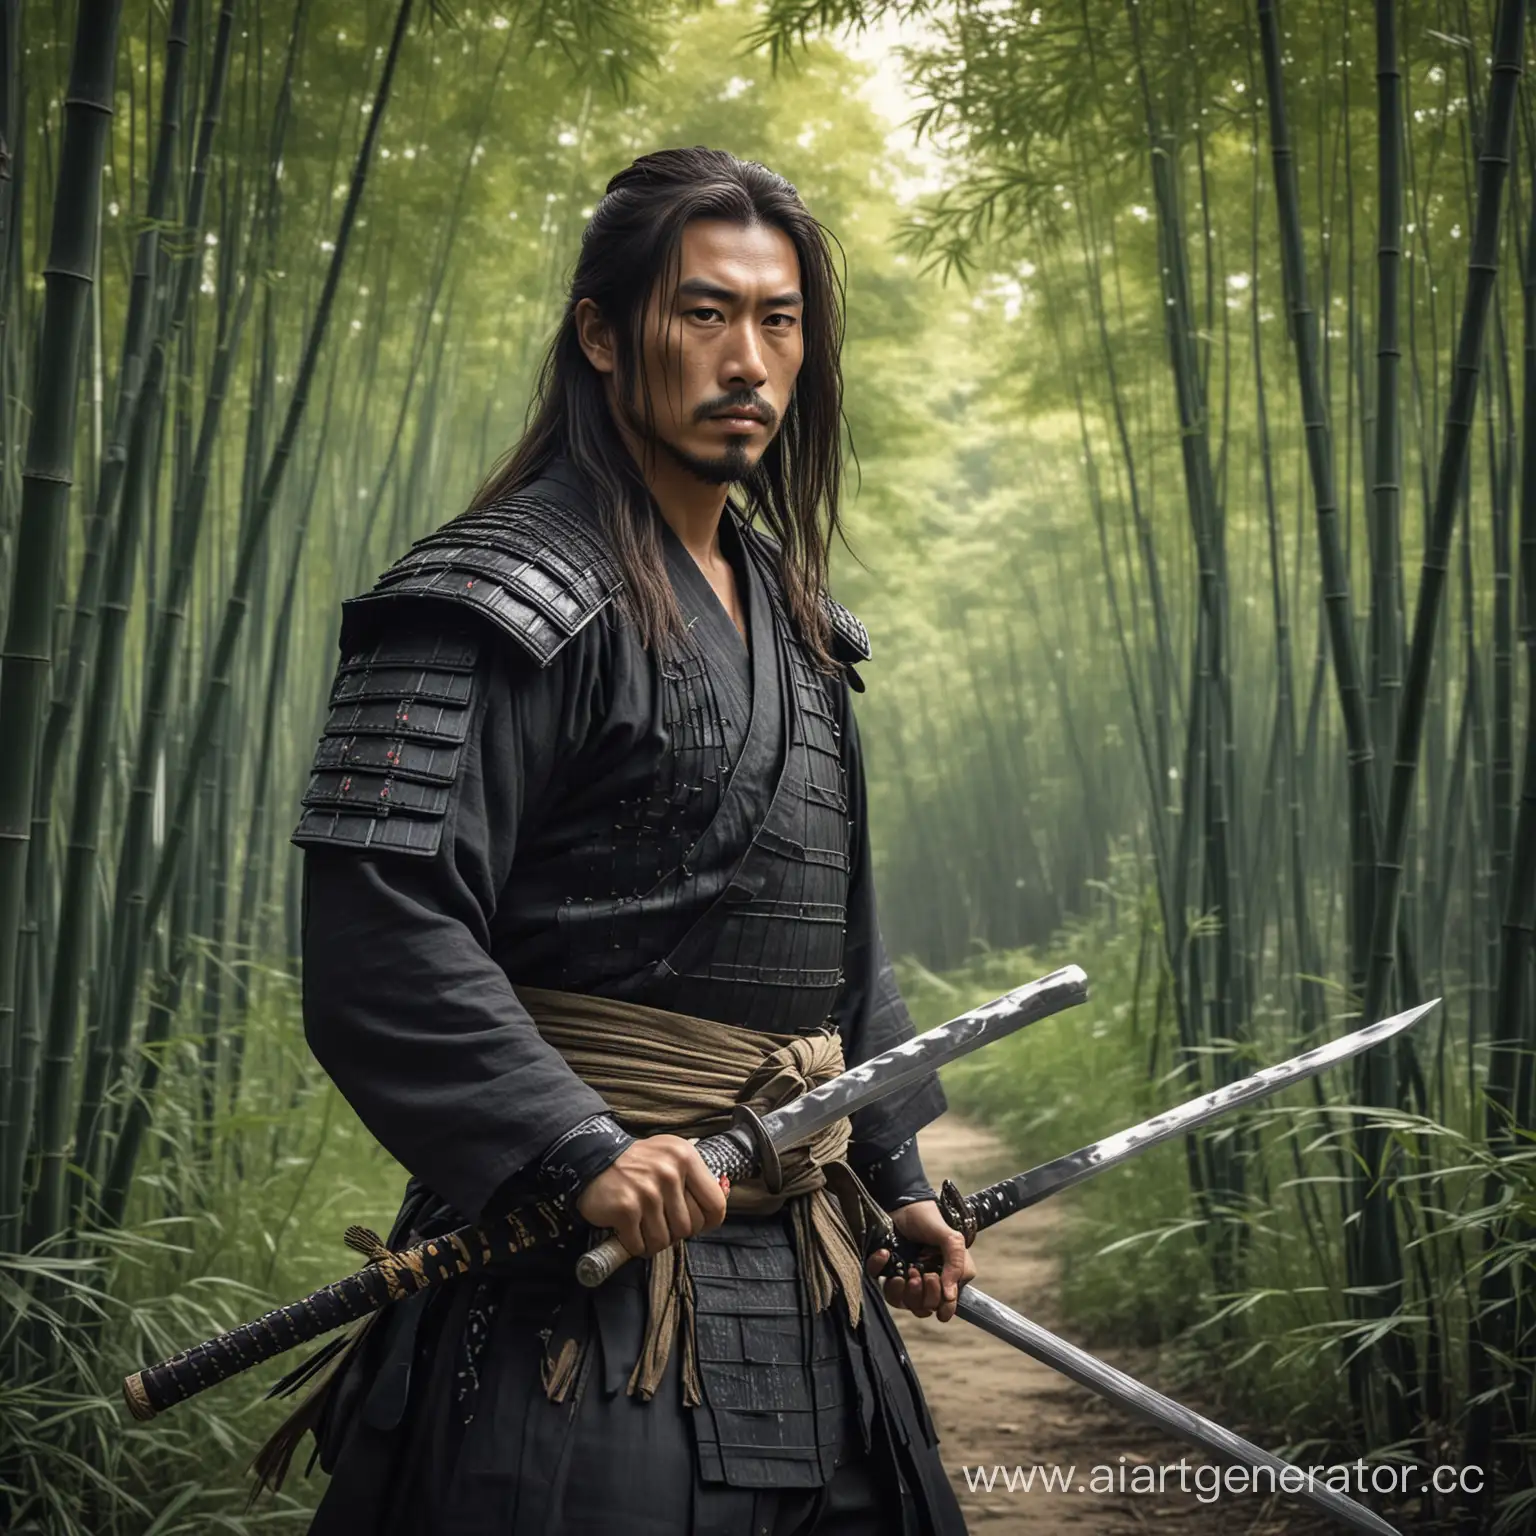  самурай с катаной в доспехах с длинными волосами в бамбуковой роще
